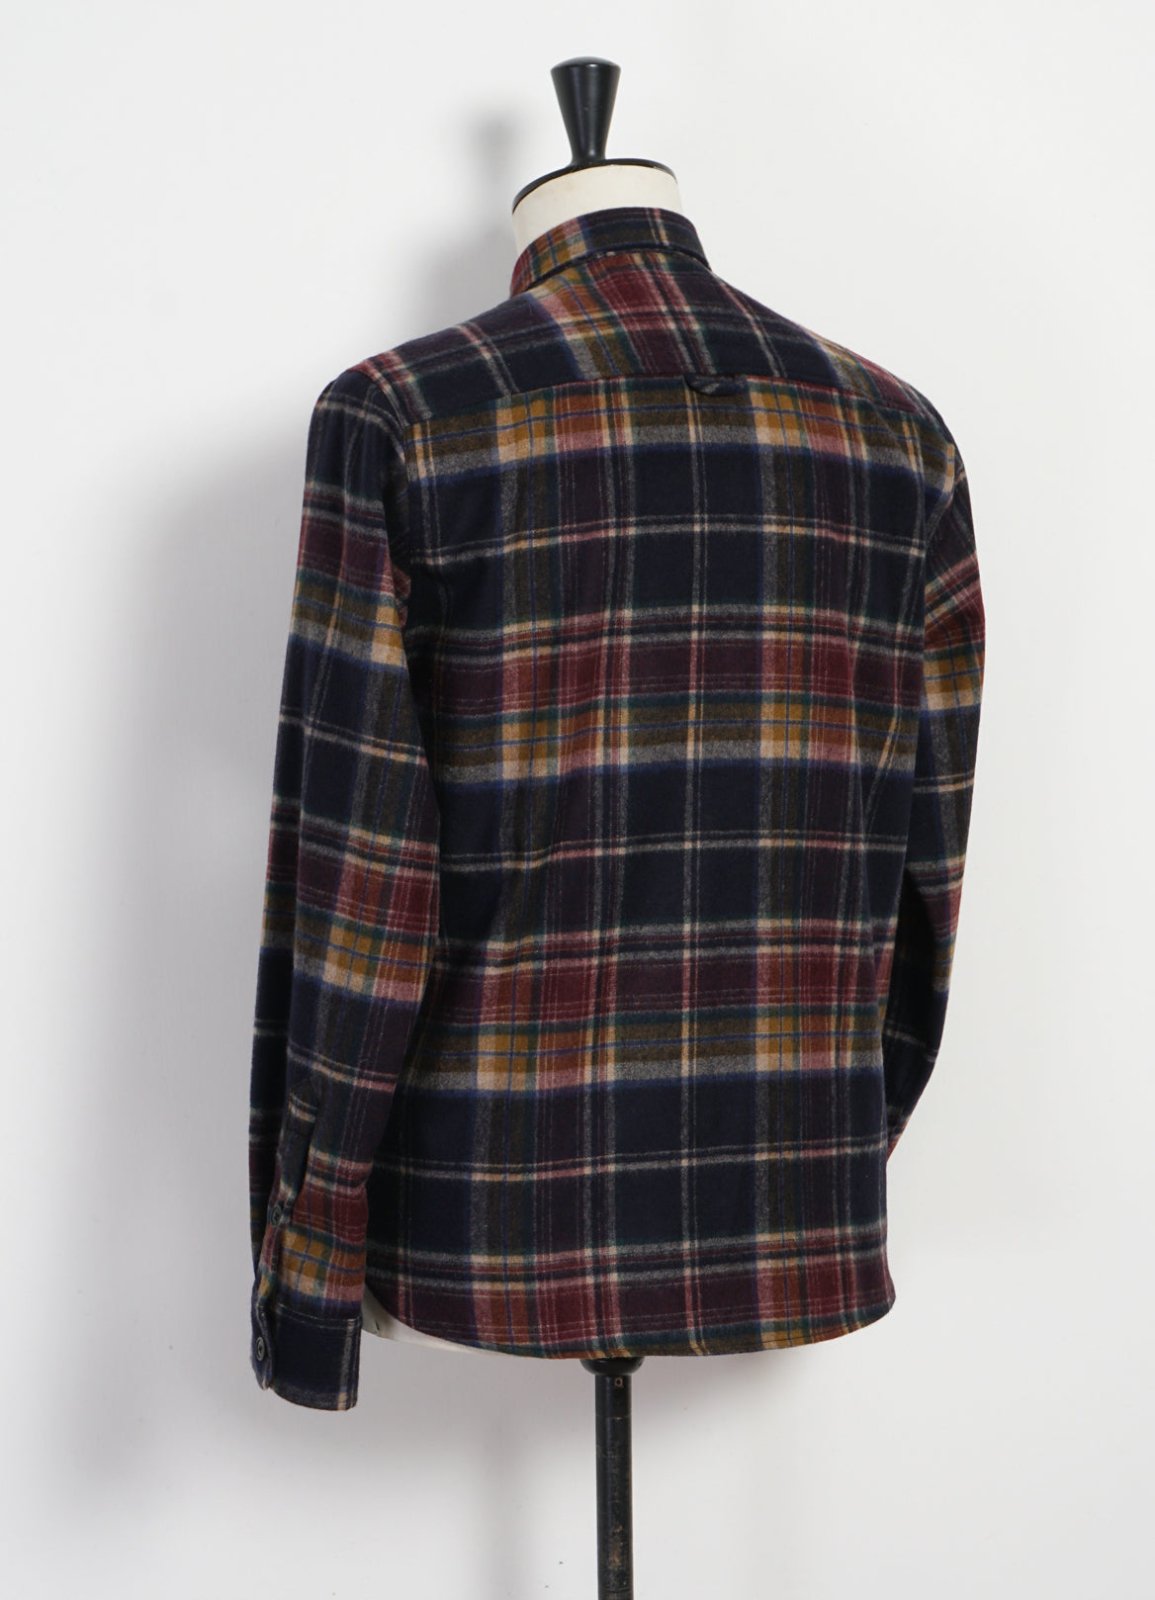 HANSEN GARMENTS - RUBEN | Casual Over Shirt | Multi Colour Check - HANSEN Garments